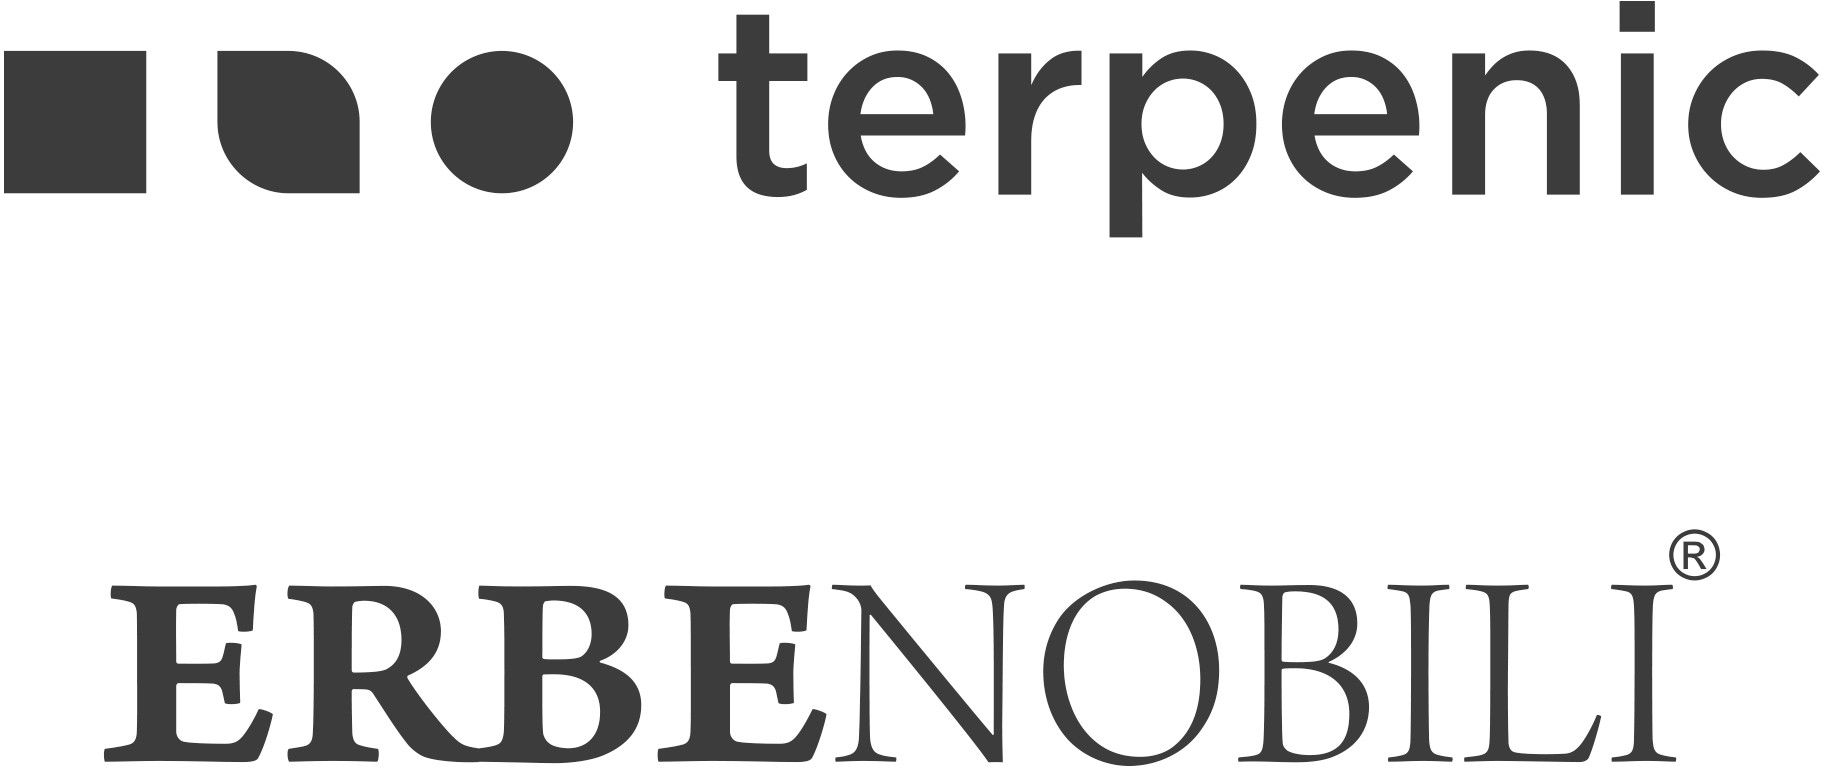 Terpenic - Erbenobili